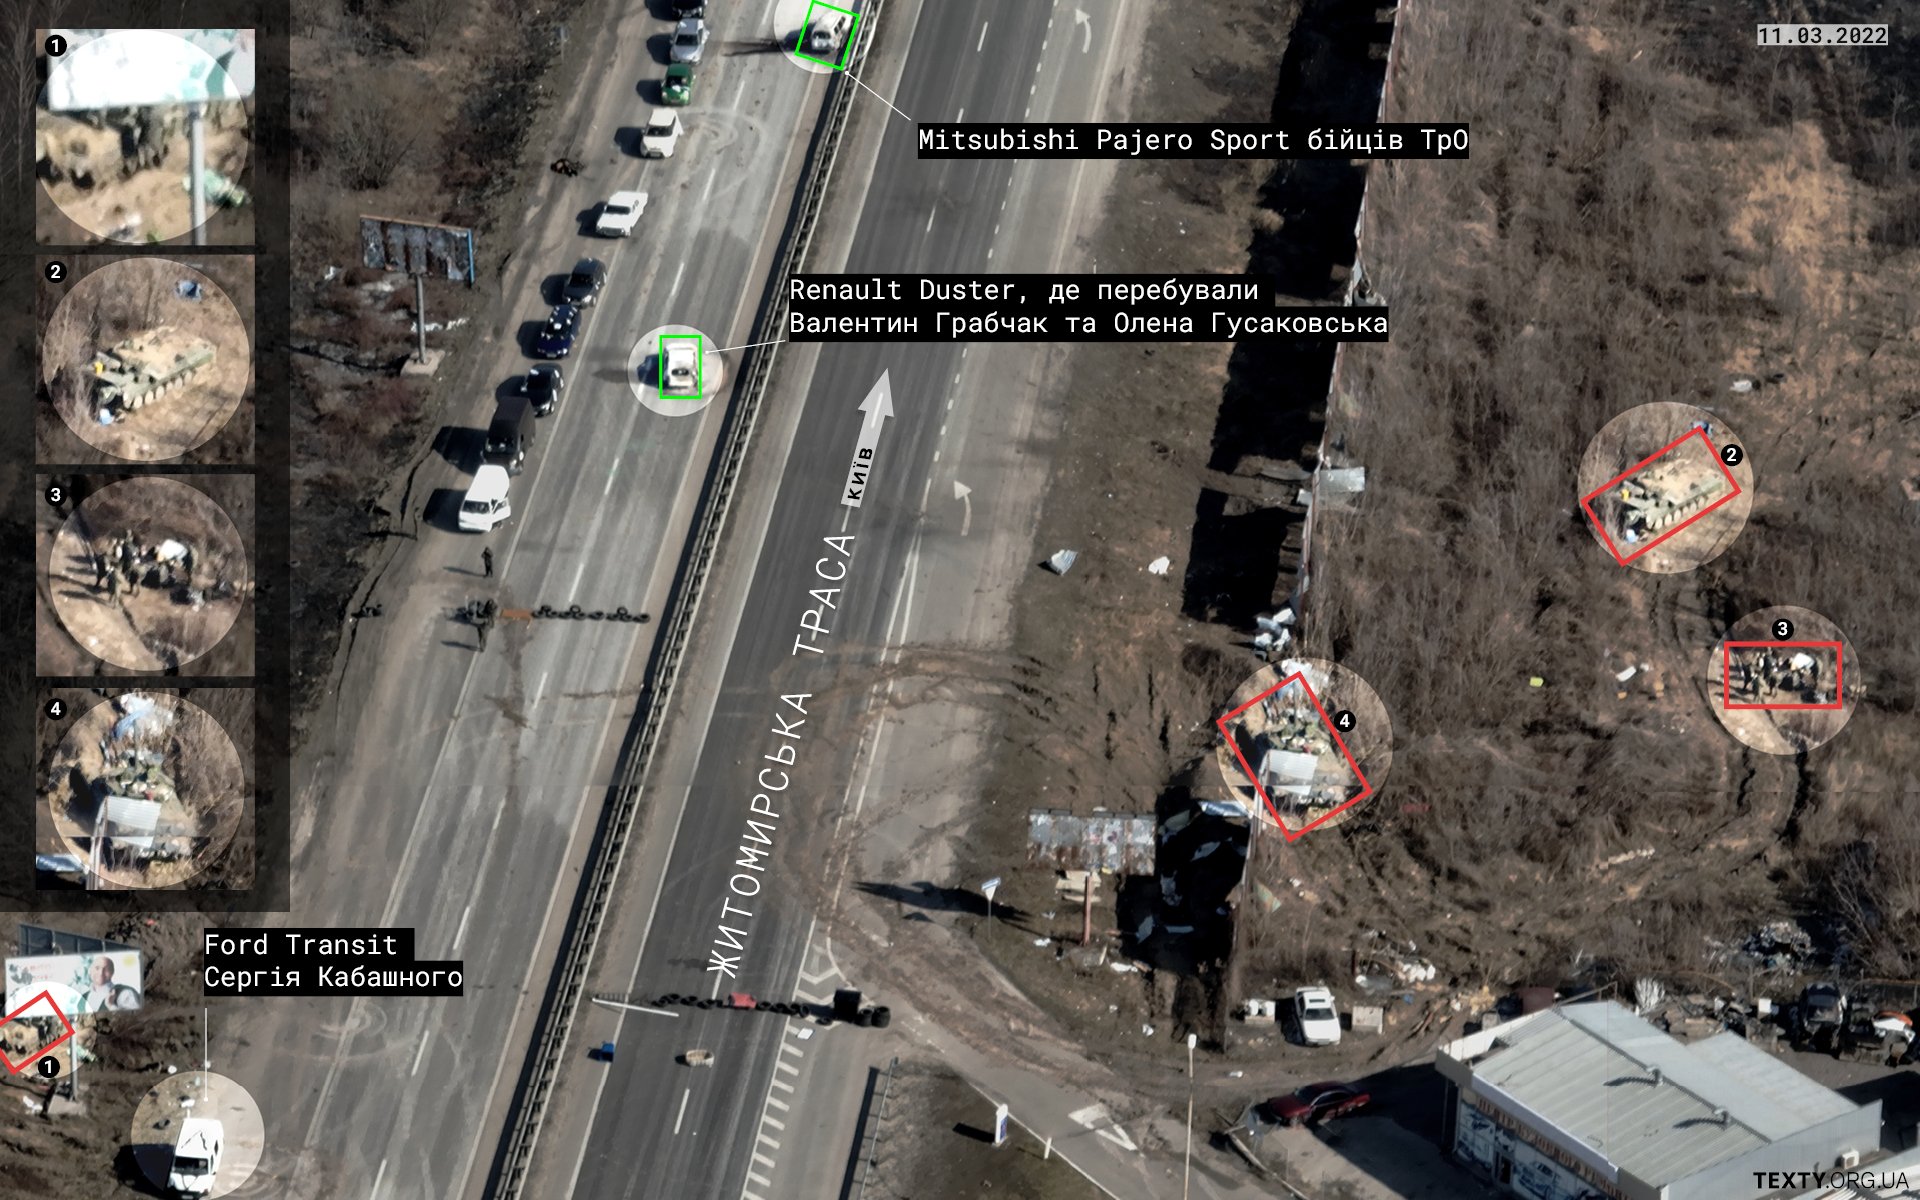 Колона цивільних авто біля російських позицій 11 березня. На кадрі також зафіксовано автомобіль Ford Transit Сергія Кабашного, який росіяни використовували для пересування, — на знімку видно, що вони позначили його літерою V